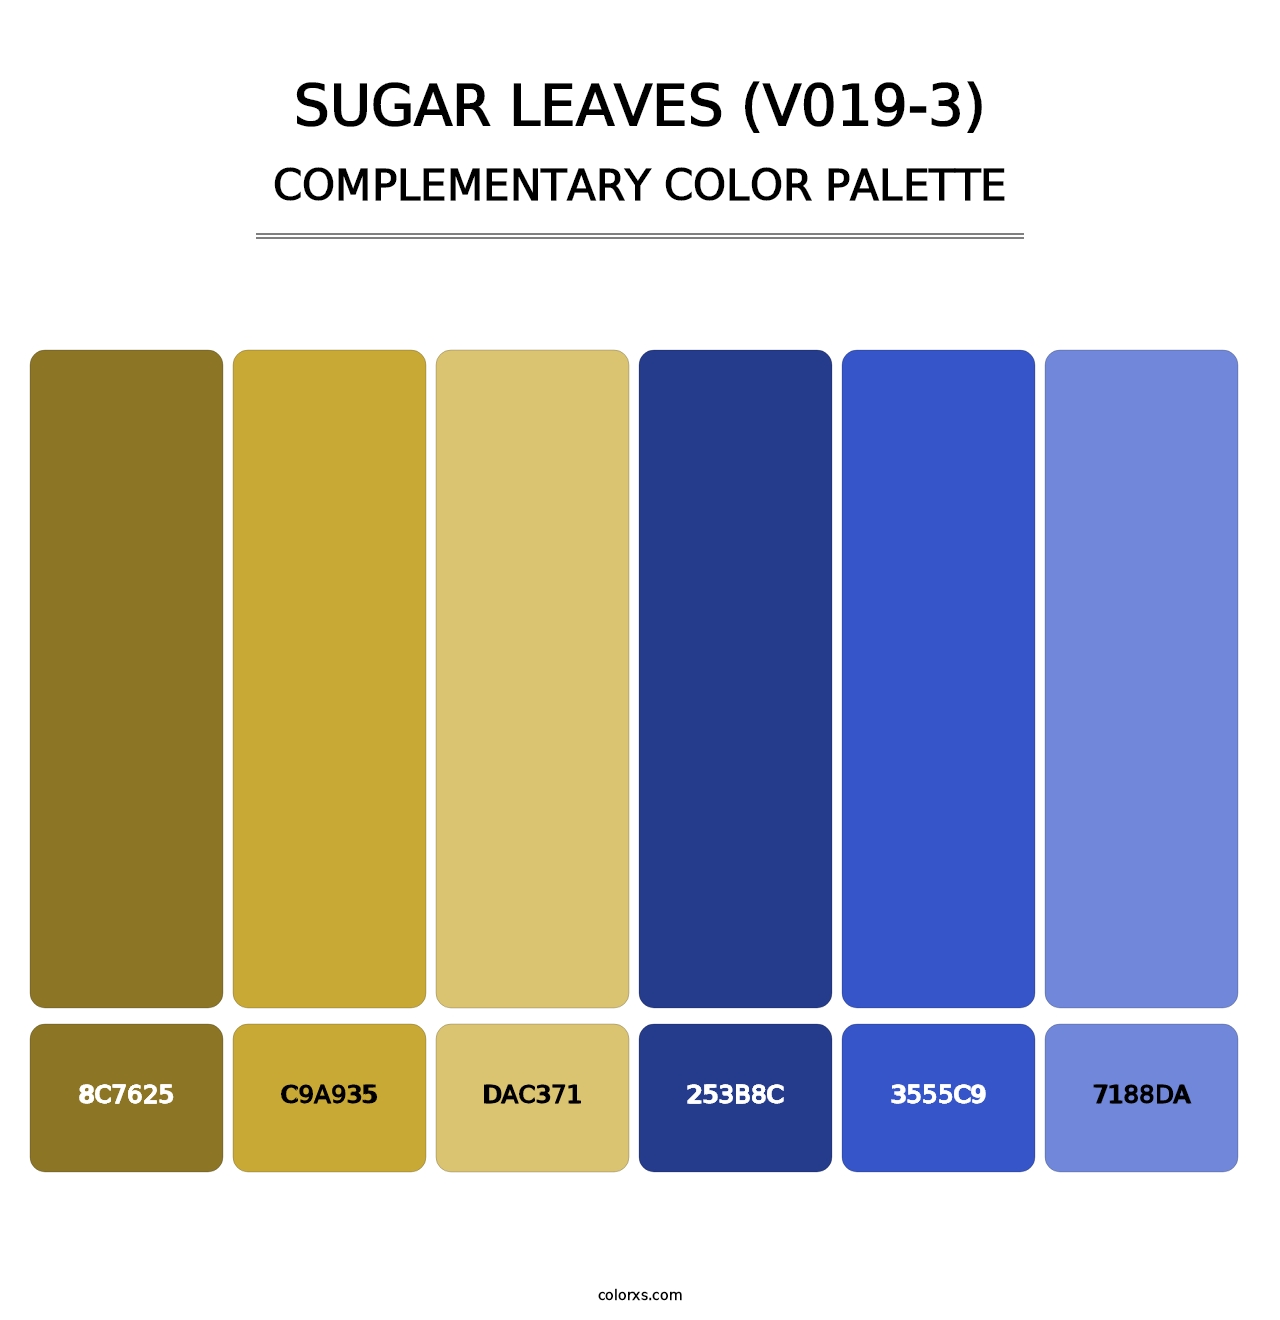 Sugar Leaves (V019-3) - Complementary Color Palette